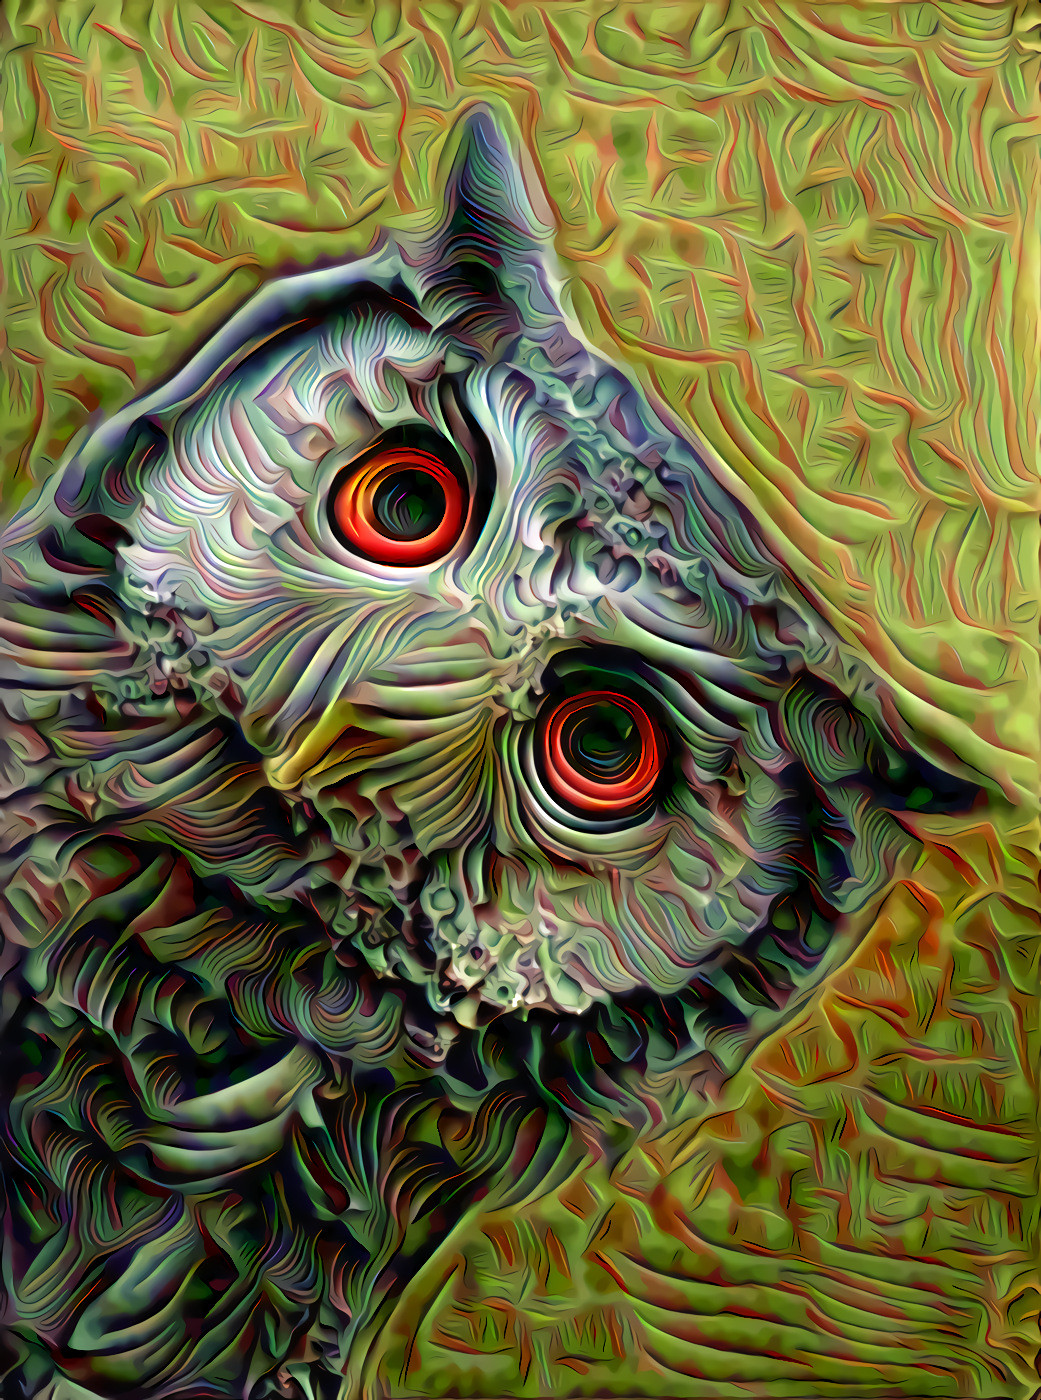 ASTRO-OWLIE